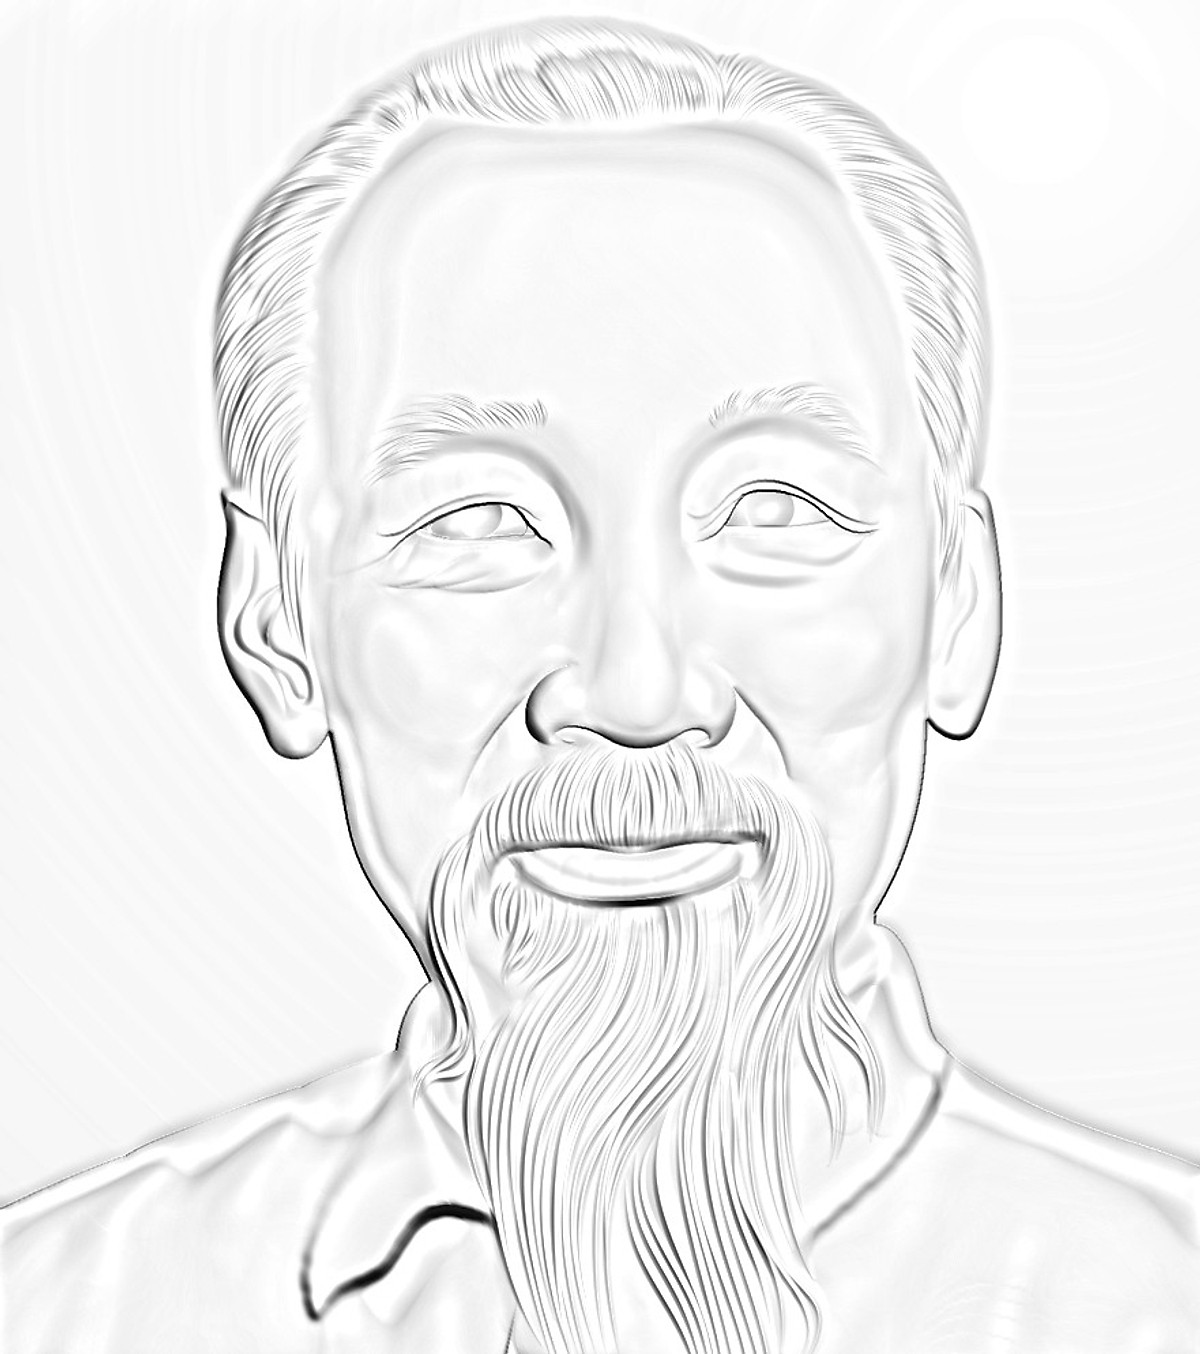 Tập vẽ Vẽ chân dung bác hồ đơn giản bằng bút chì  Mừng sinh nhật Bác Hồ  Chí Minh  YouTube